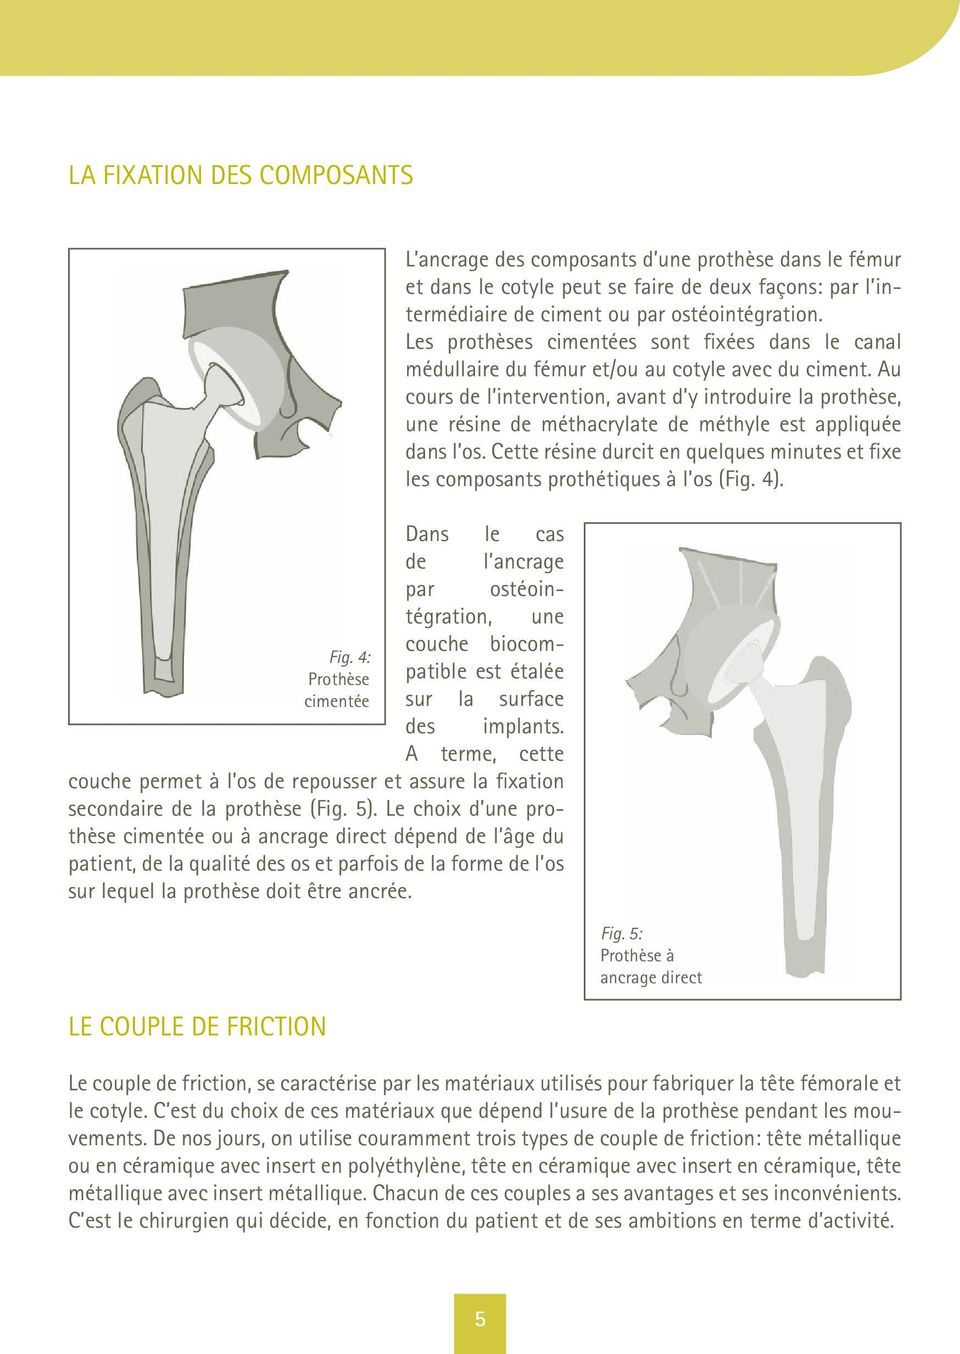 Le choix d une prothèse cimentée ou à ancrage direct dépend de l âge du patient, de la qualité des os et parfois de la forme de l os sur lequel la prothèse doit être ancrée.